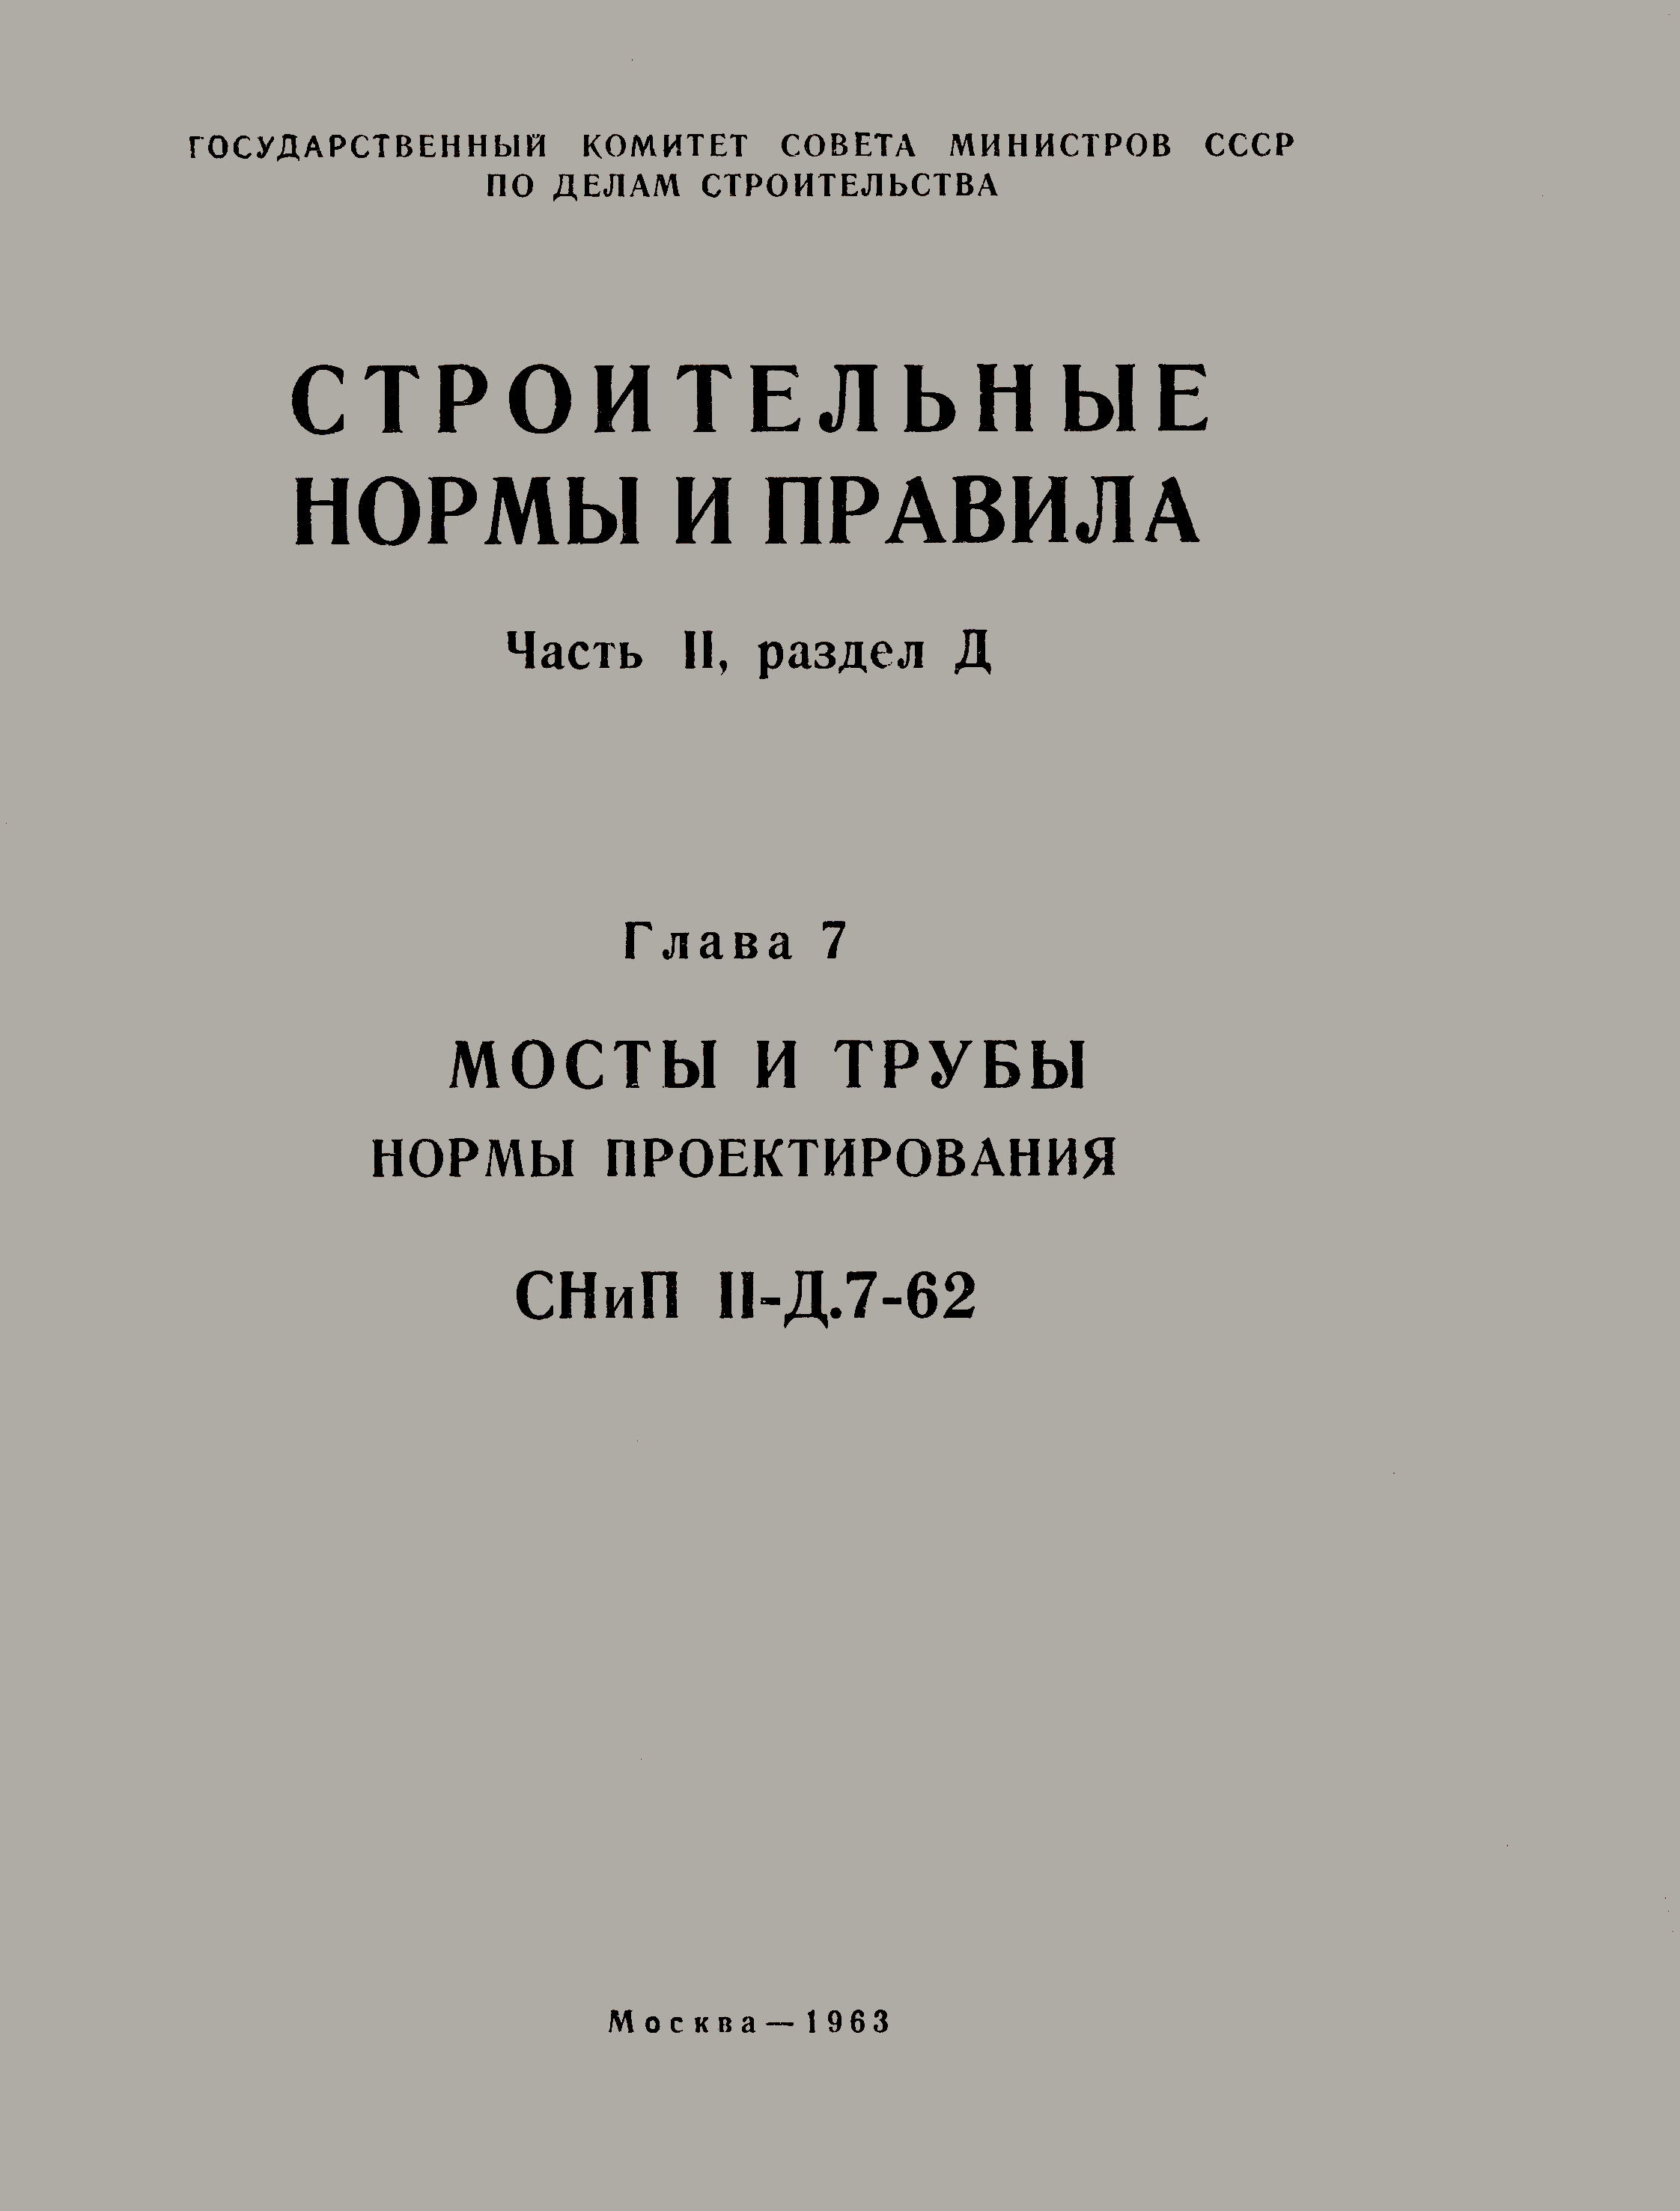 СНиП II-Д.7-62